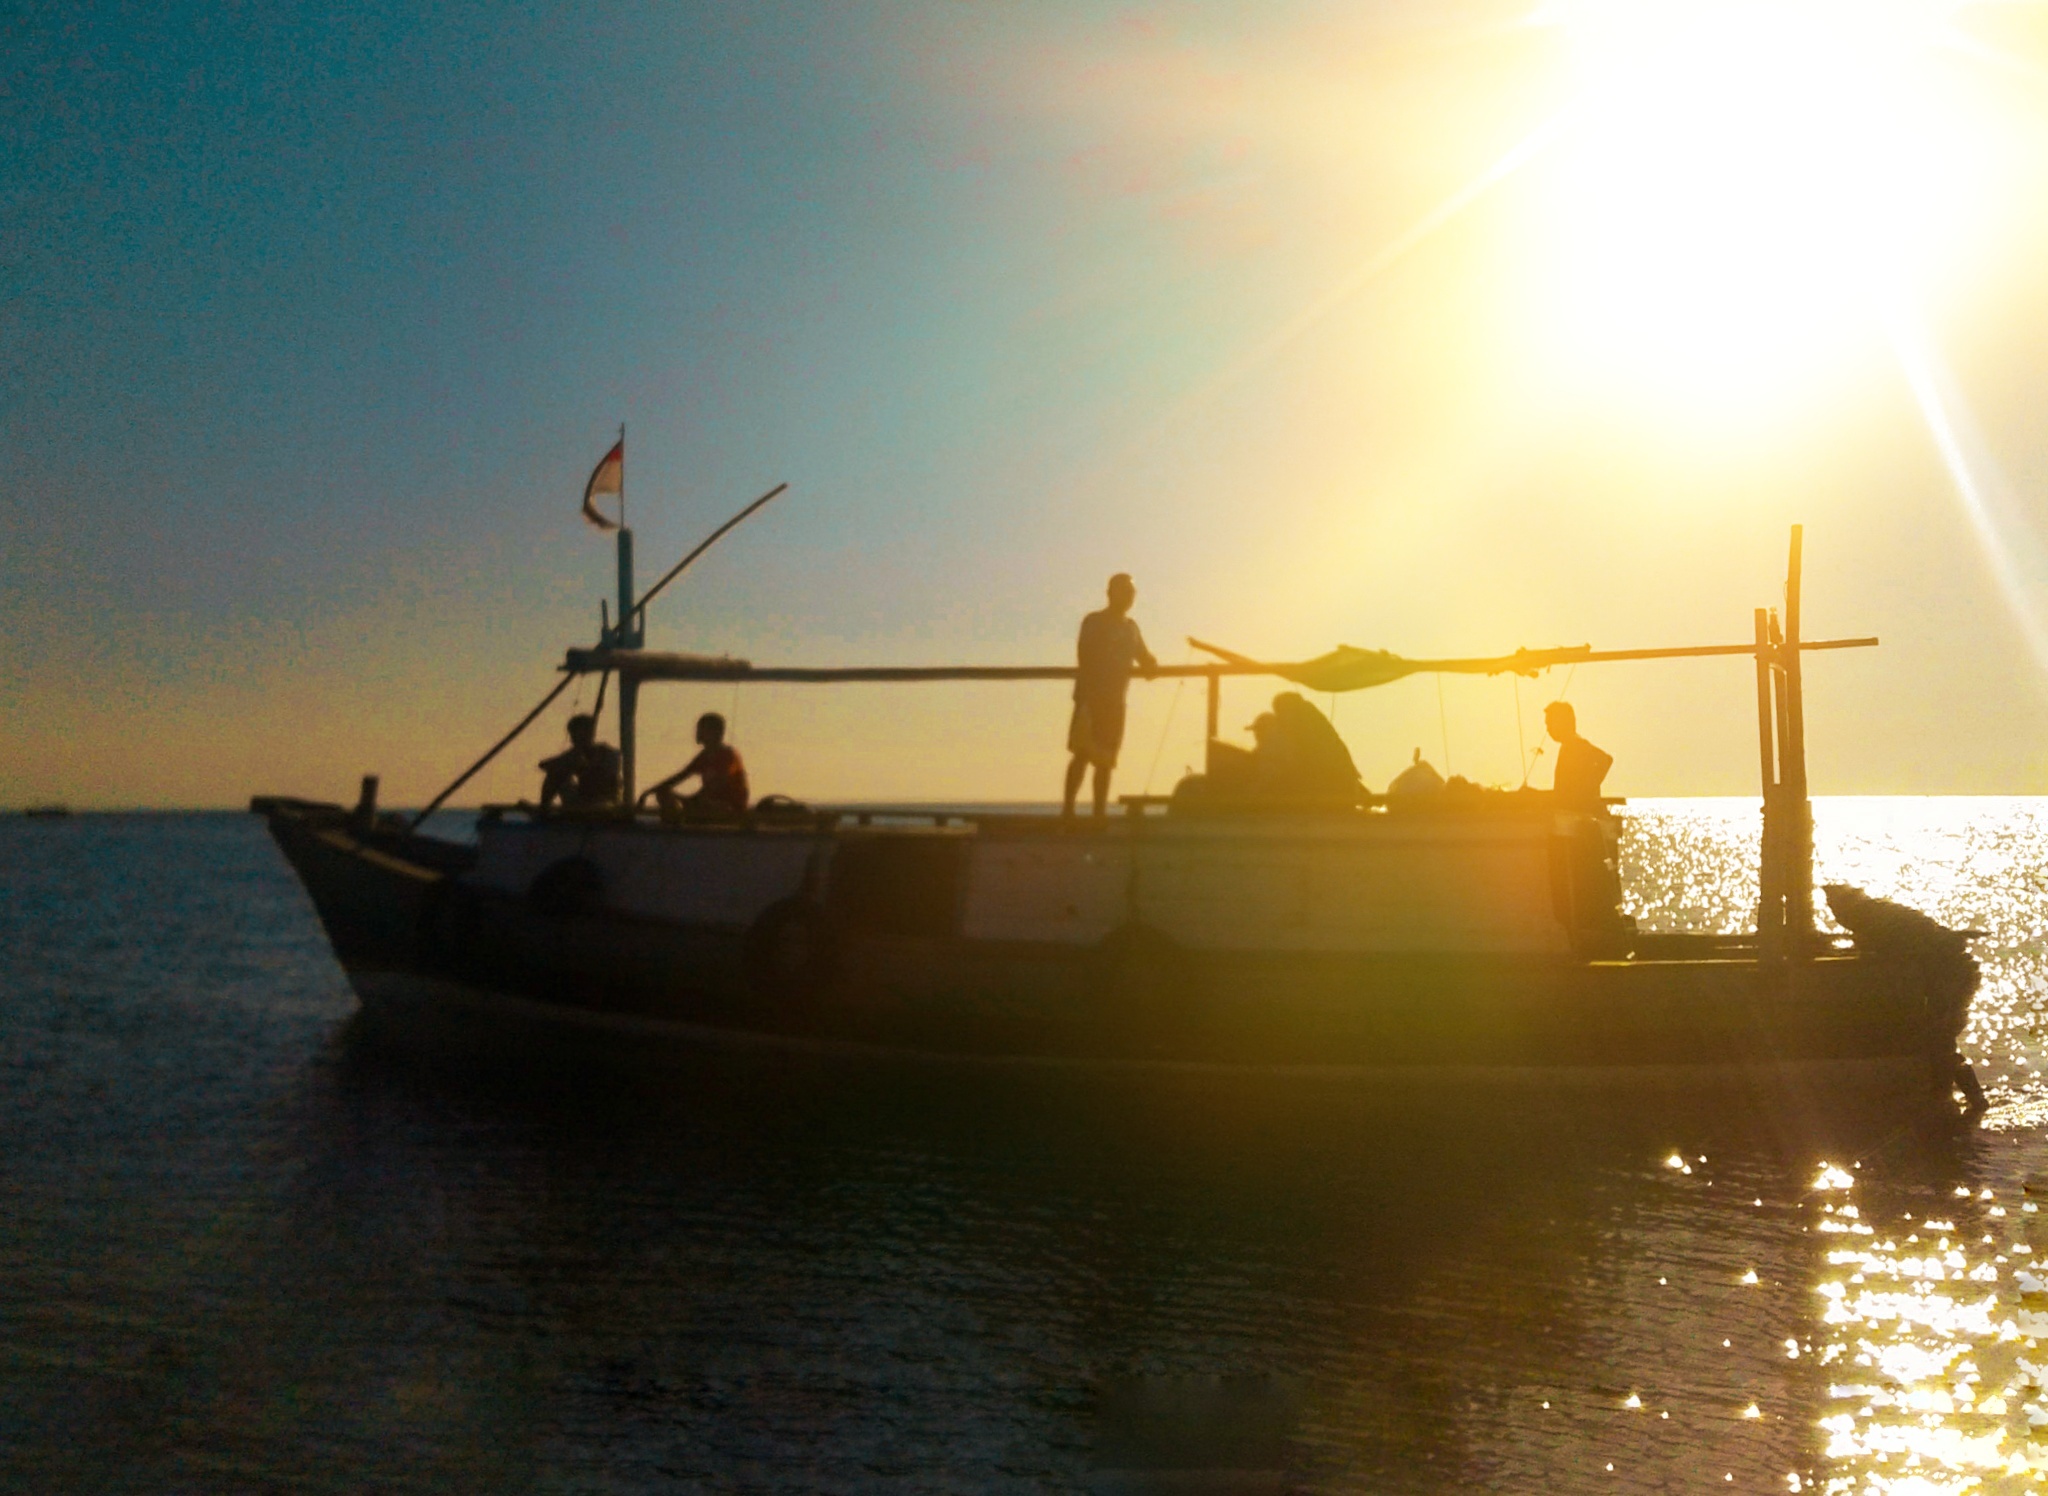 Menuju Pulau Gili Ketapang mengunakan kapal motor (c) Haris Kurniawan/Travelingyuk